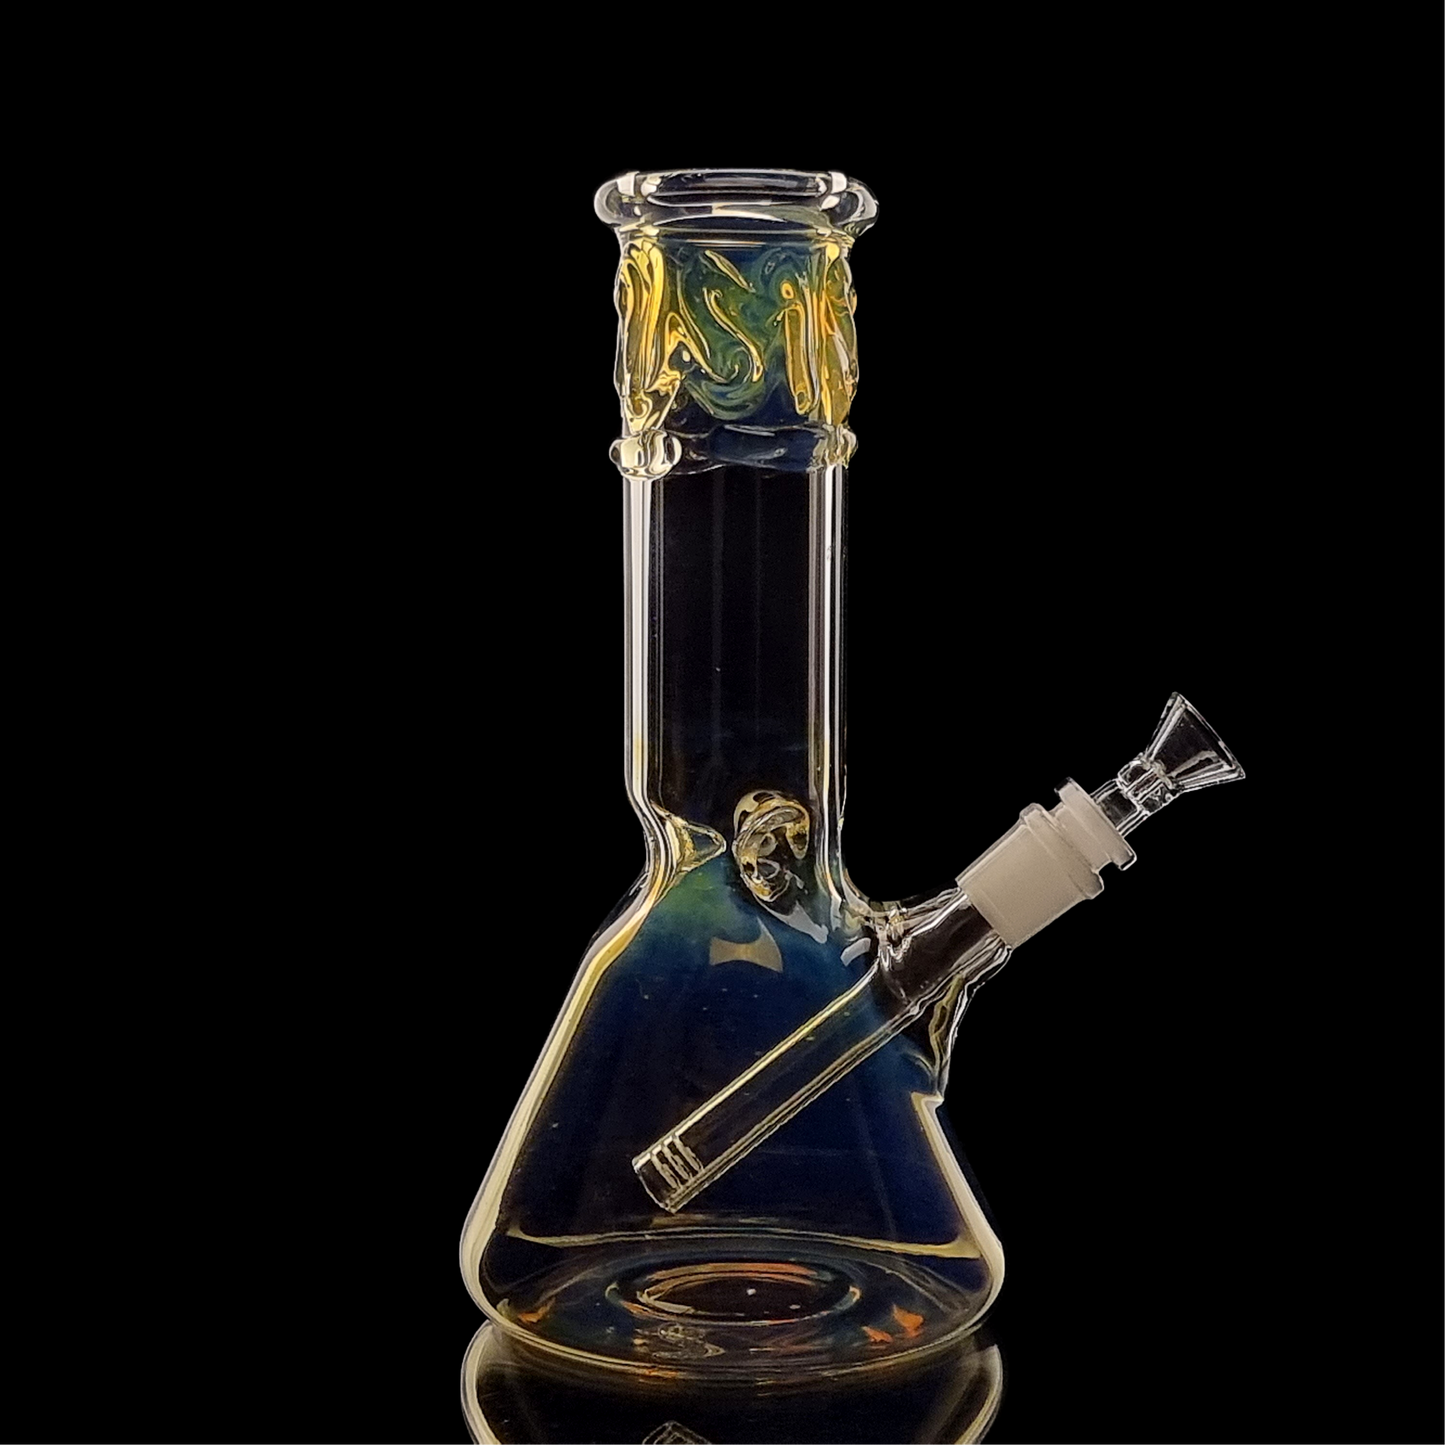 Highliner Series Colour Change Beaker by Chameleon Glass